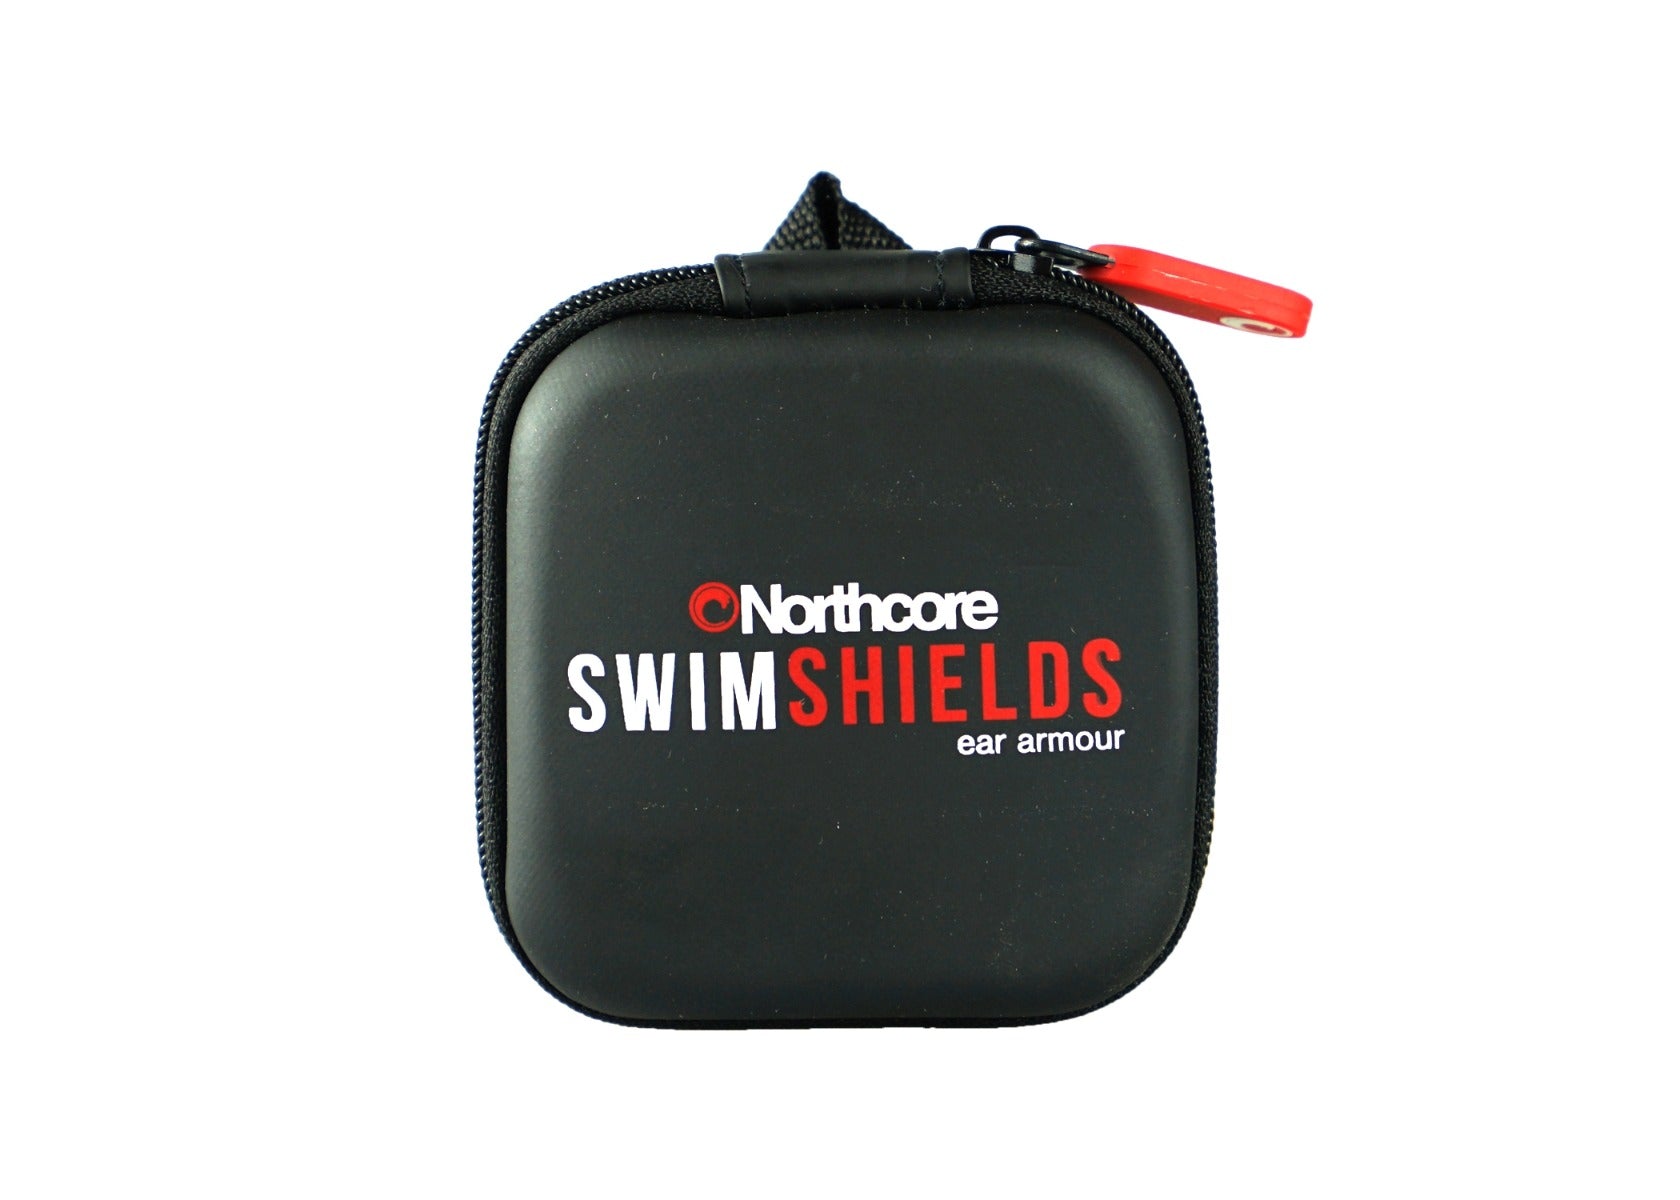 swimshield swimmers ear plugs to block water